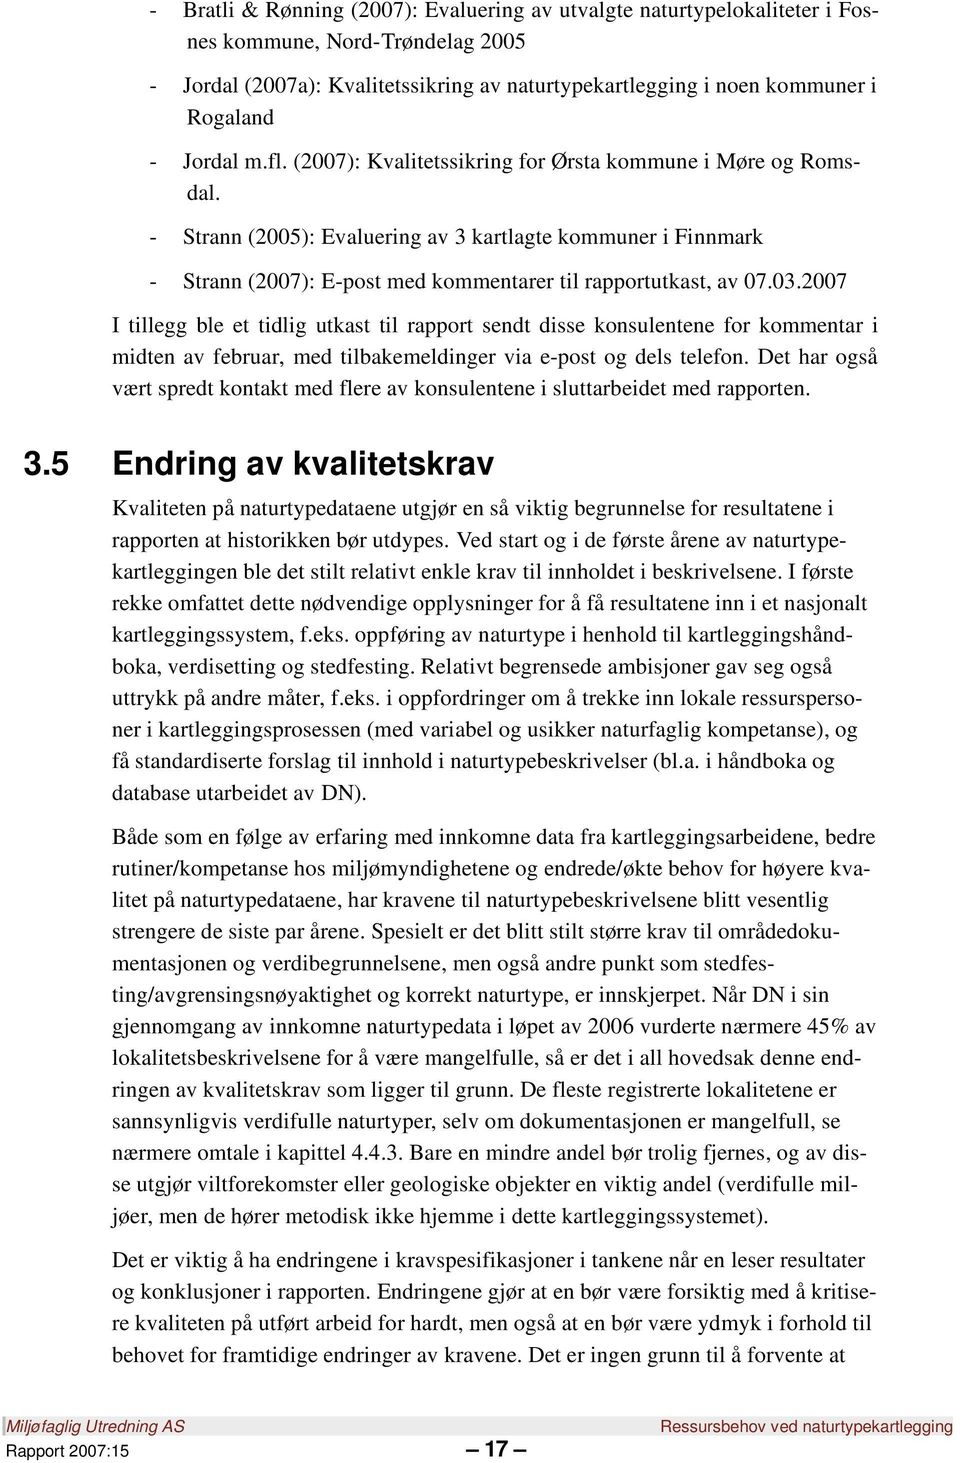 - Strann (2005): Evaluering av 3 kartlagte kommuner i Finnmark - Strann (2007): E-post med kommentarer til rapportutkast, av 07.03.